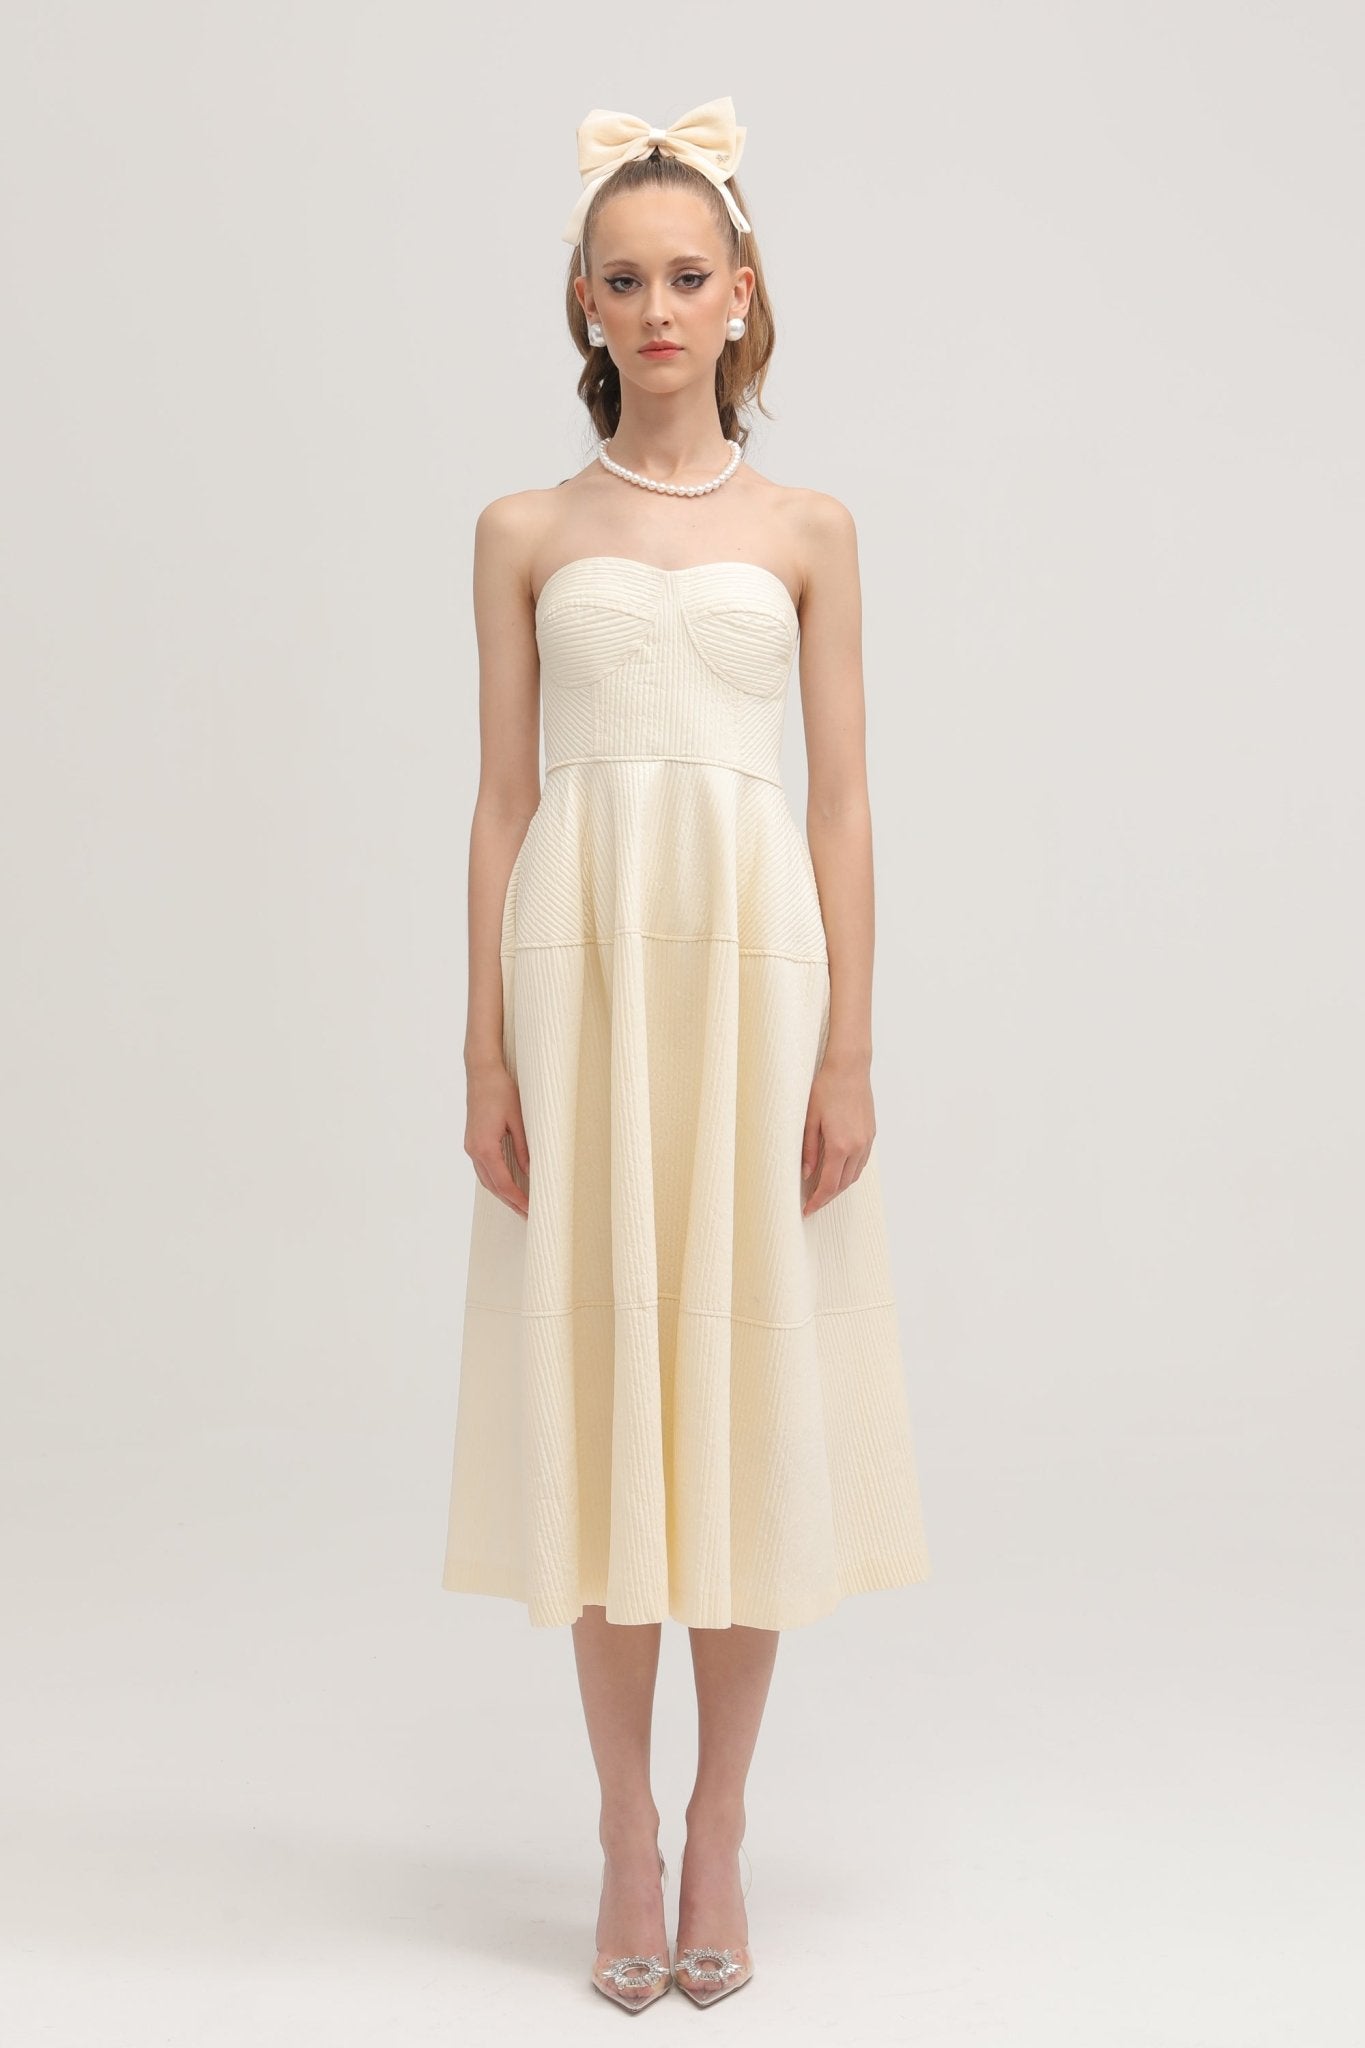 Cortny bustier-style dress - Miss Rosier - Women's Online Boutique